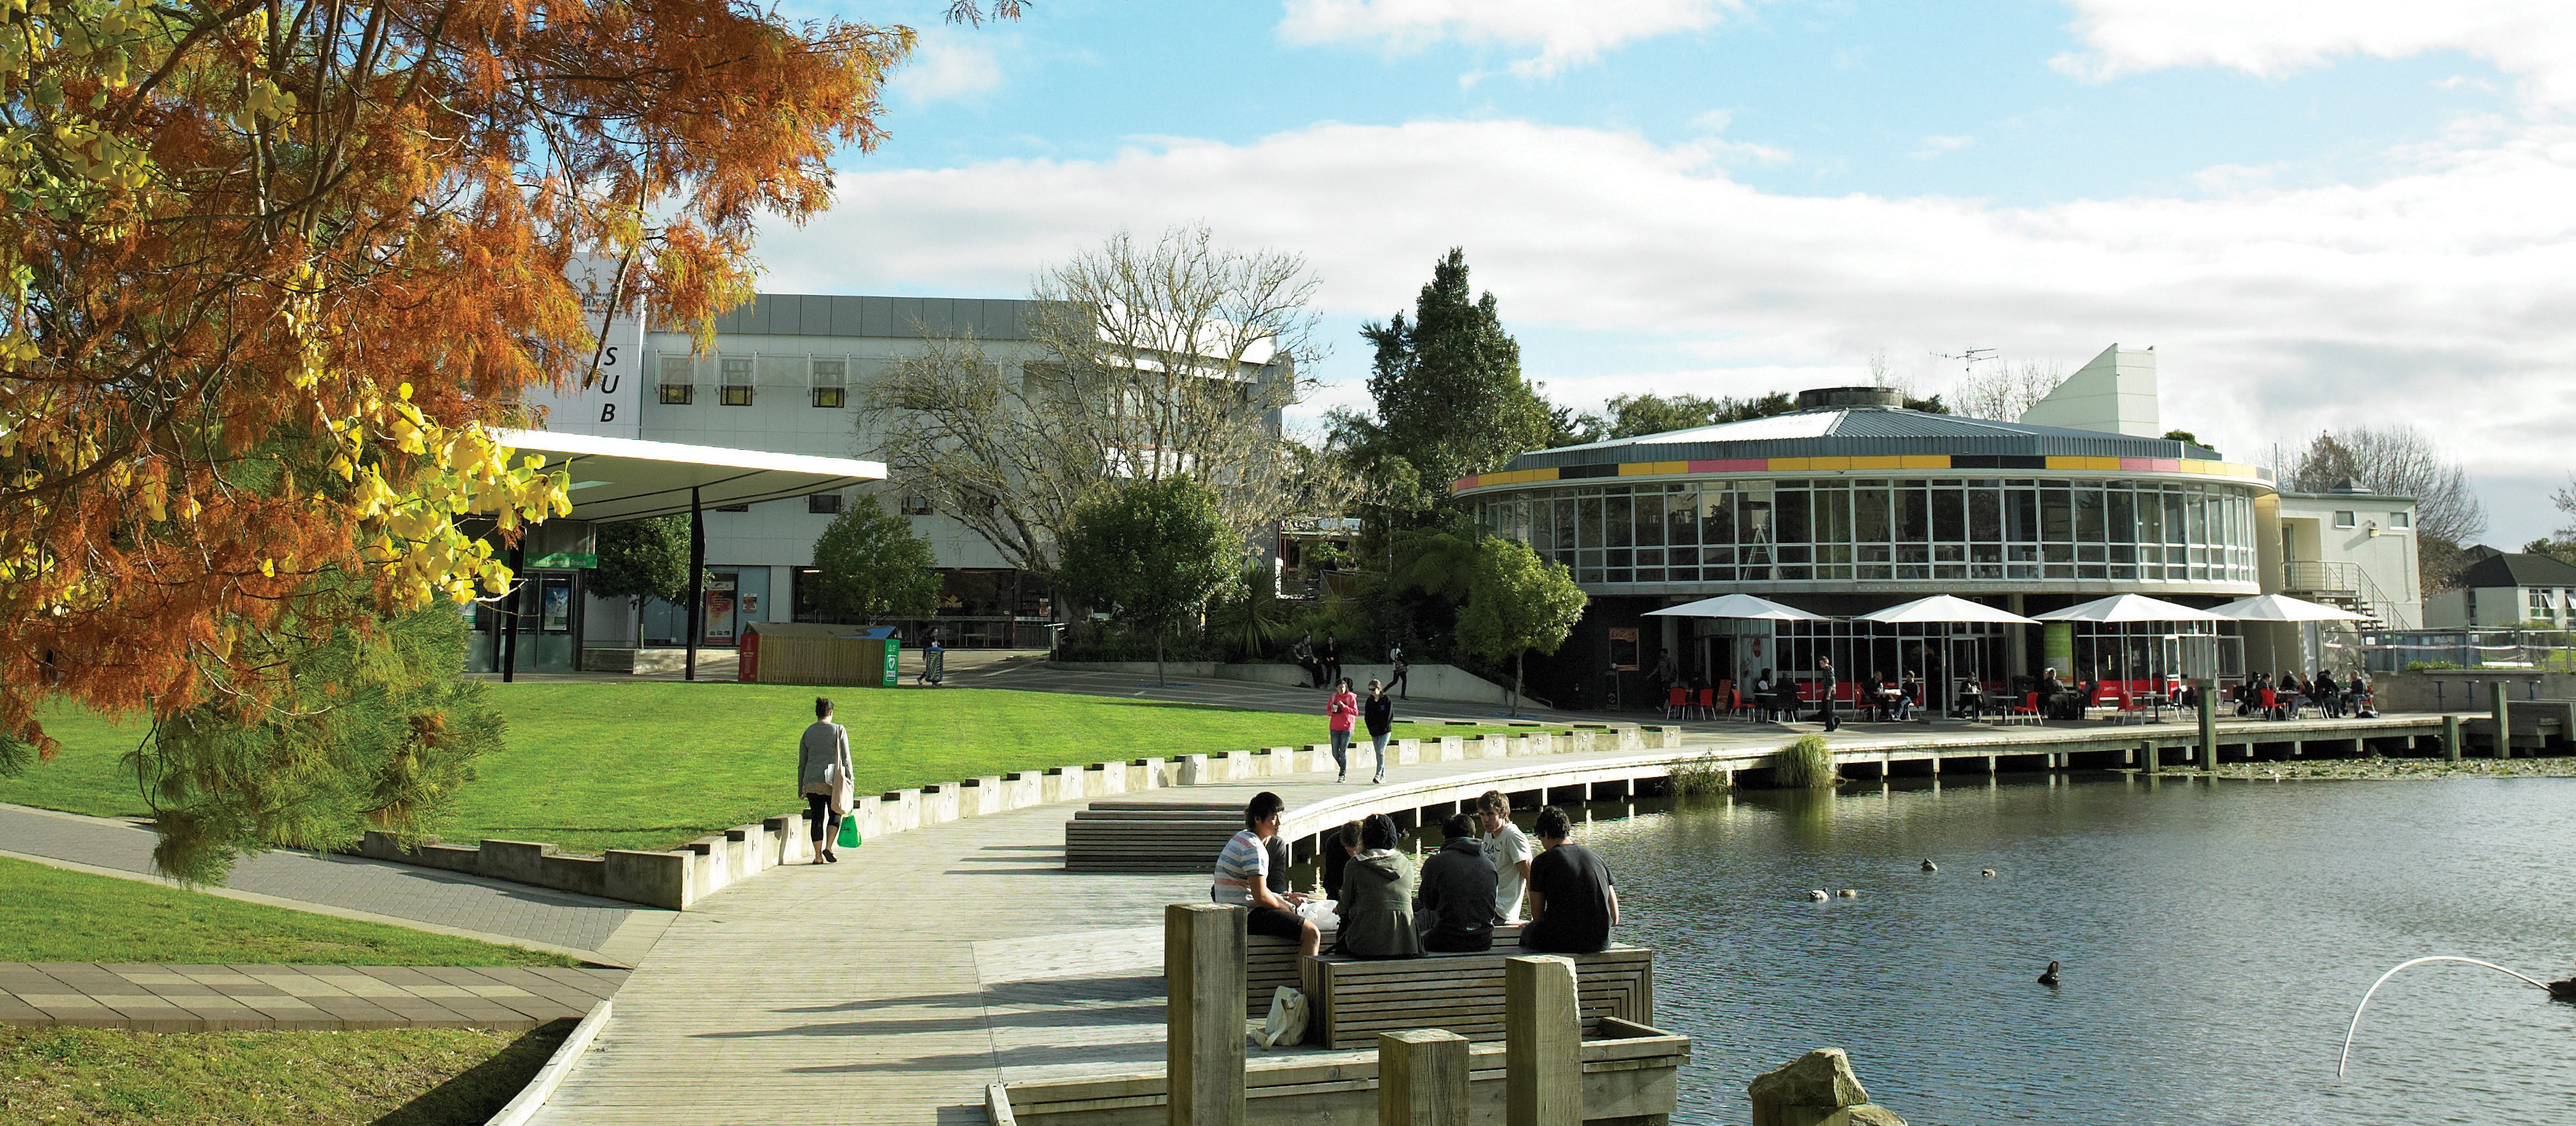 University of Waikato